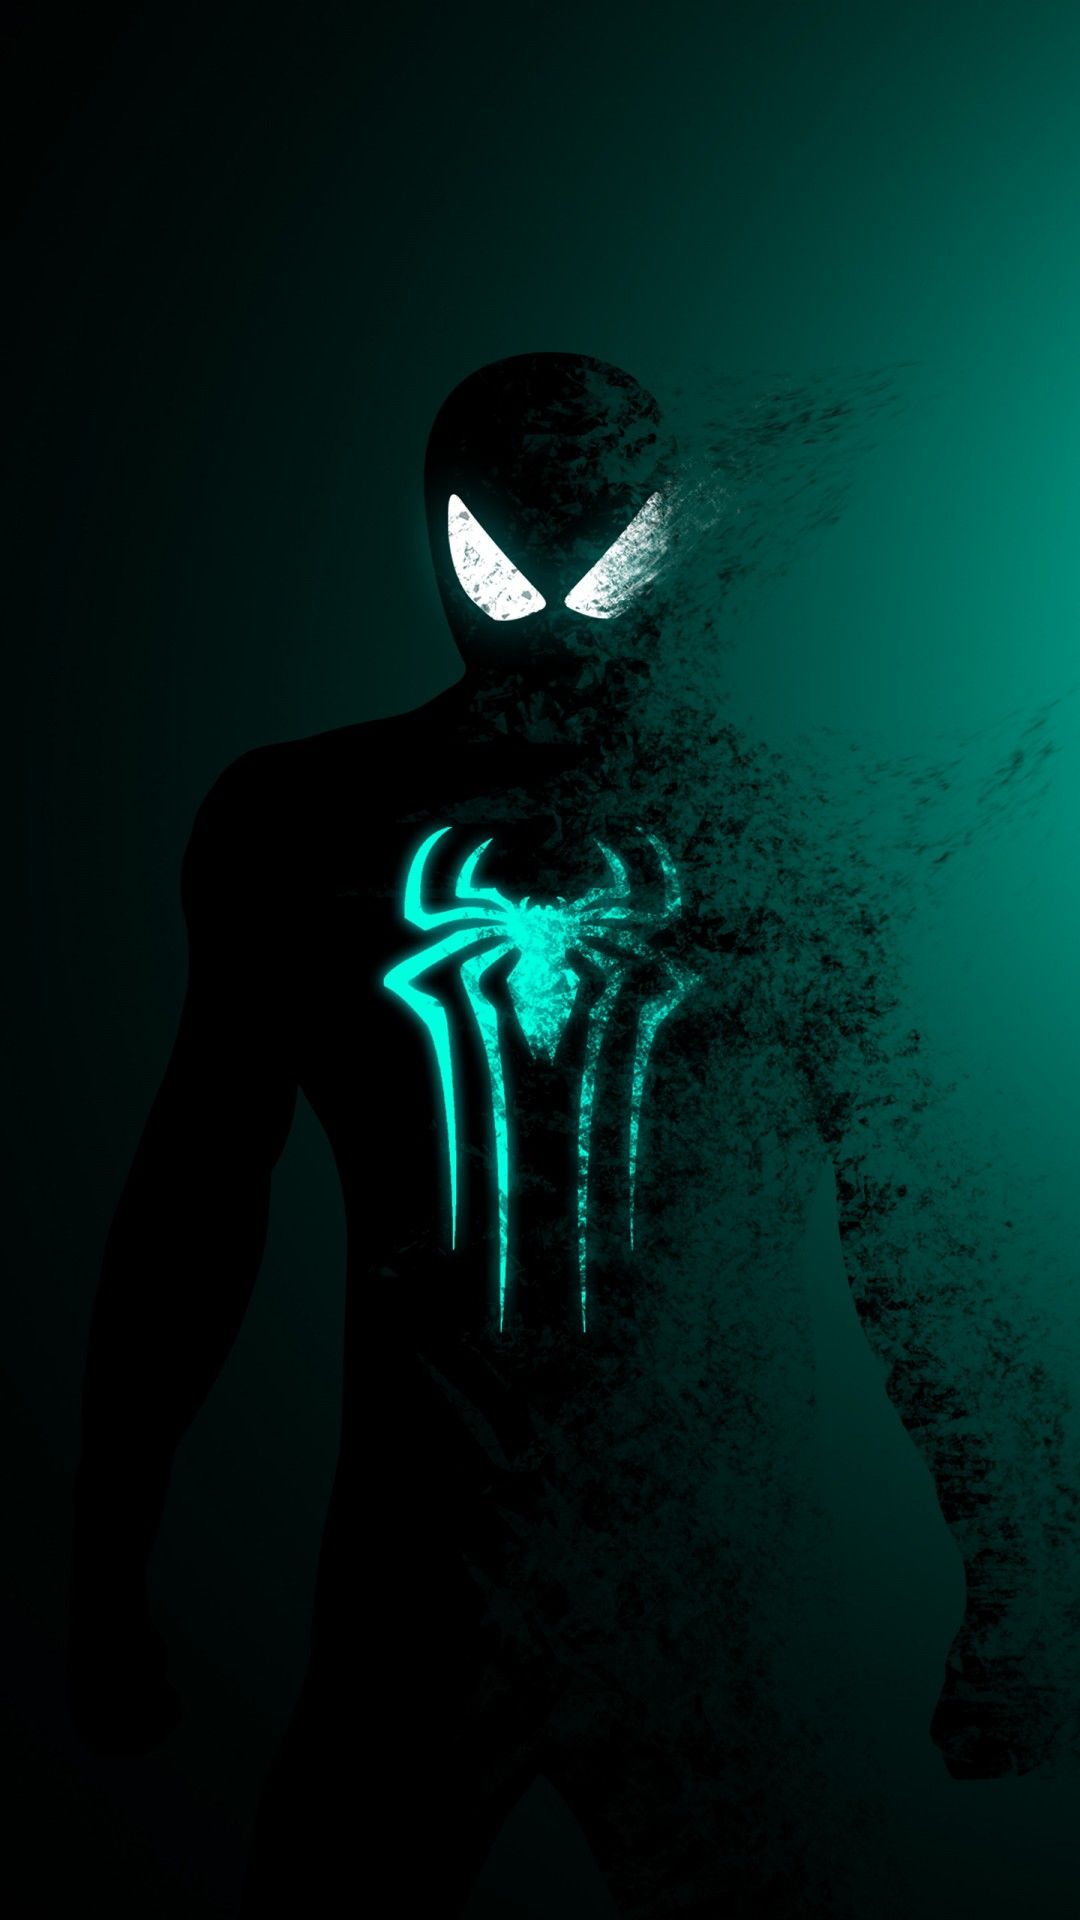 Spider Man Minimal Artwork 4K Wallpaper